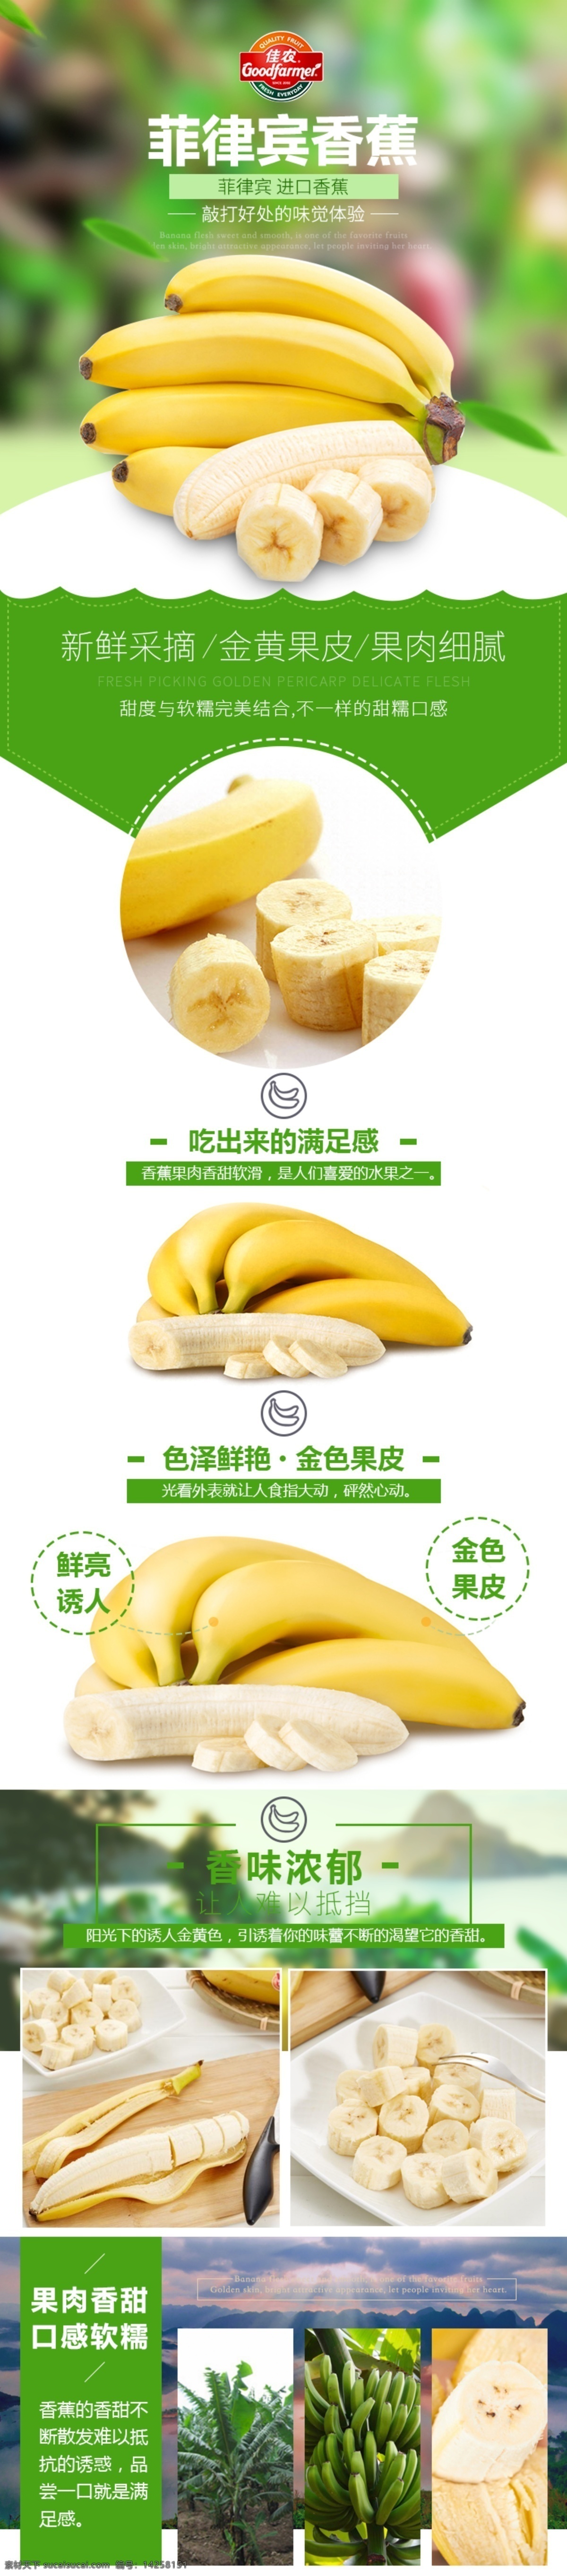 菲律宾 香蕉 美食 淘宝 电商 详情 页 新鲜 采摘 水果 口感软糯 绿色 健康